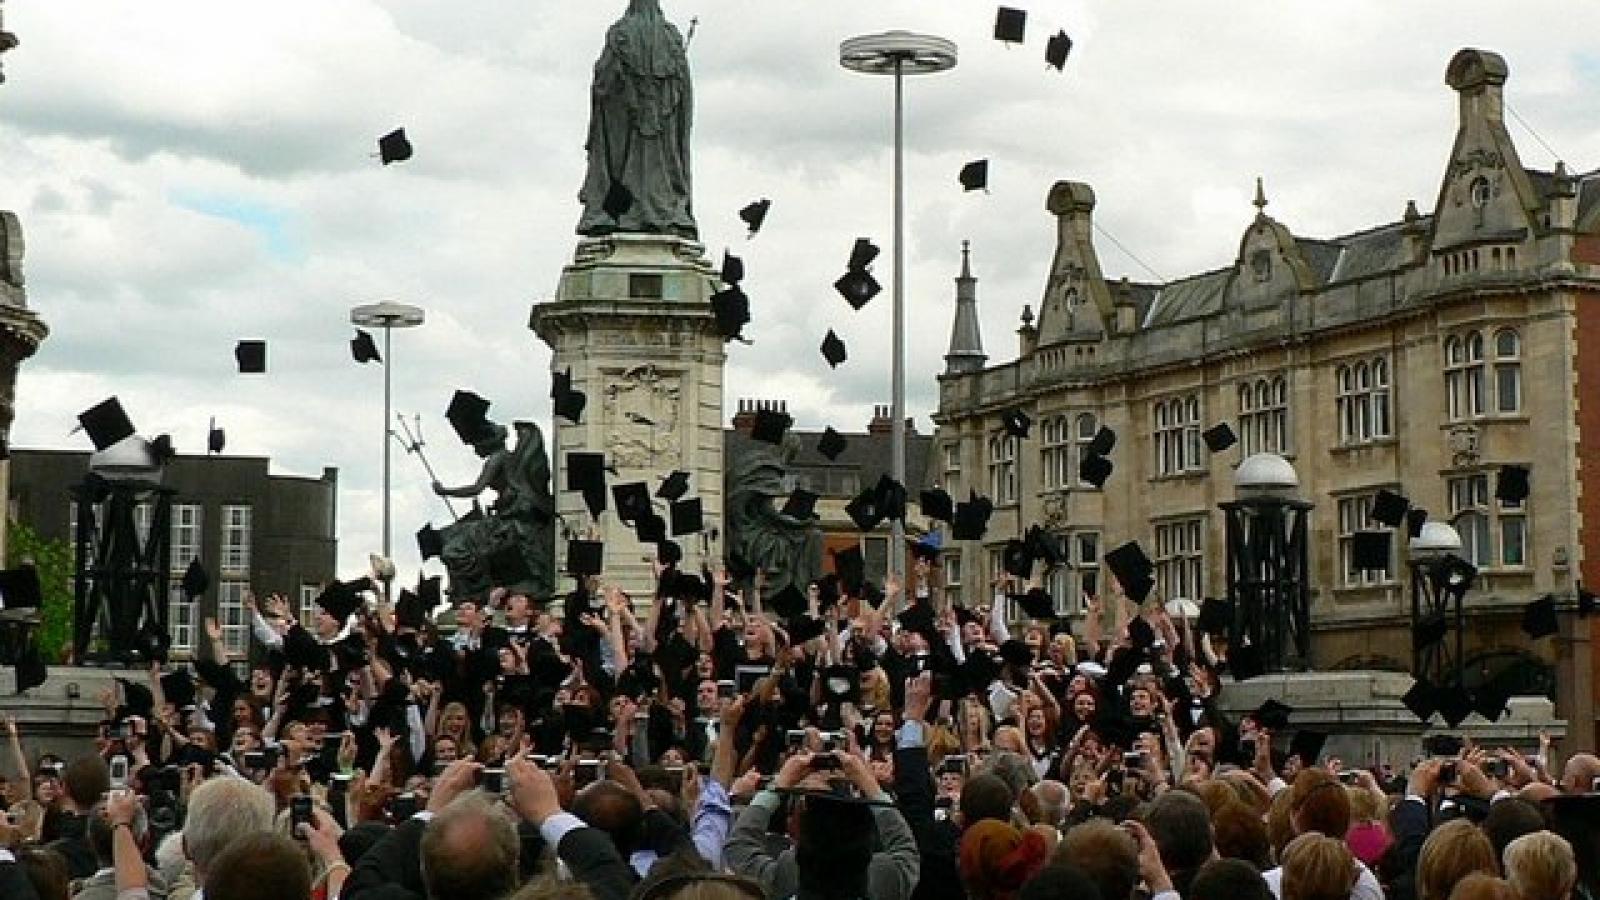 Universitätsabsolventen feiern ihren Abschluss indem sie gemeinsam ihre Hüte in die Luft werfen.